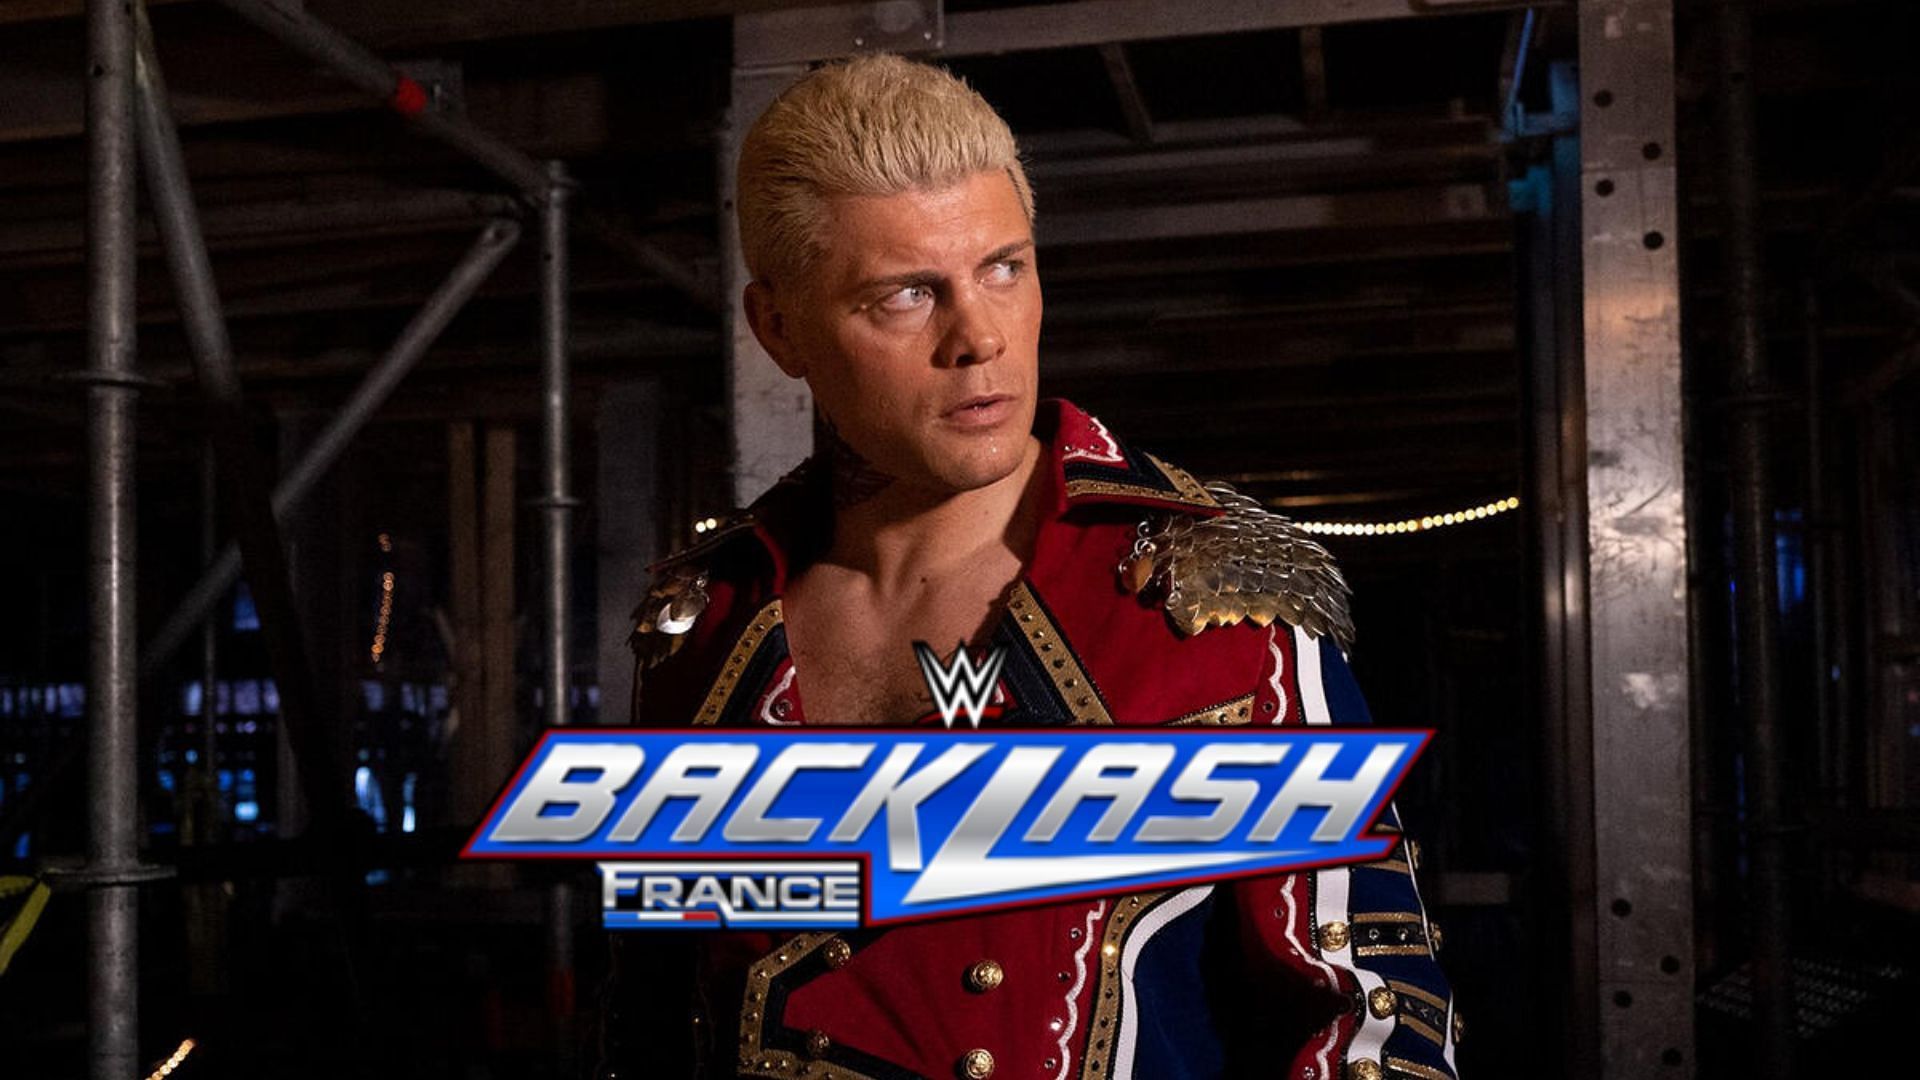 Cody Rhodes will headline Backlash France (Credit: WWE)